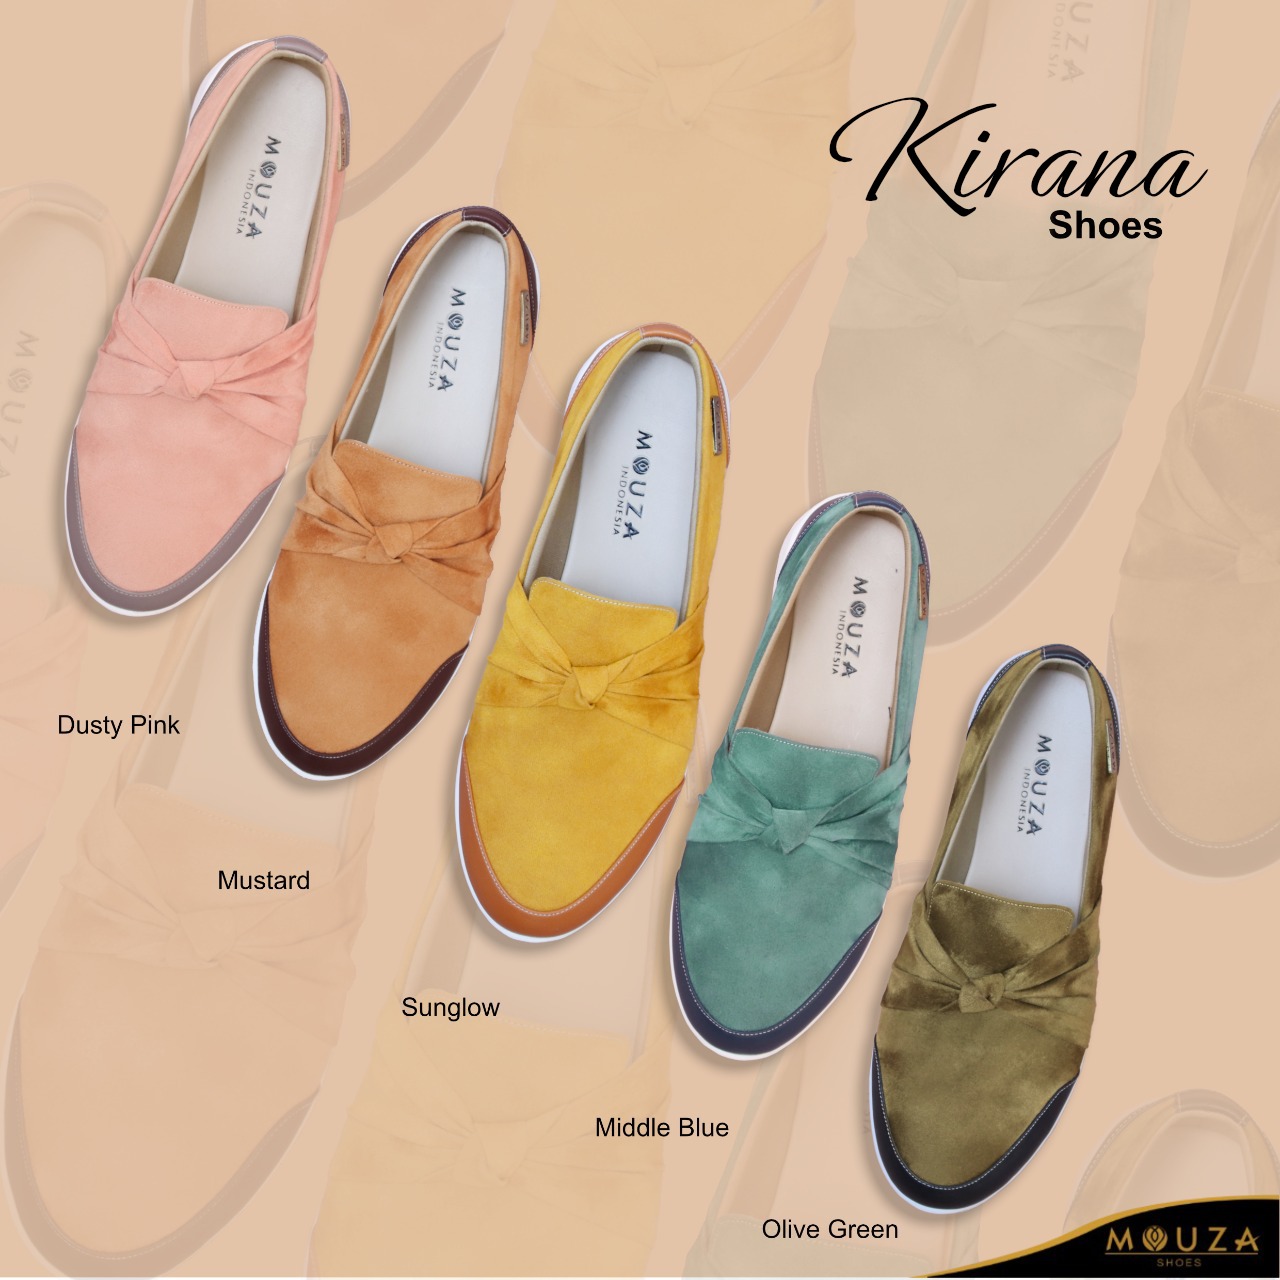 Kirana Shoes